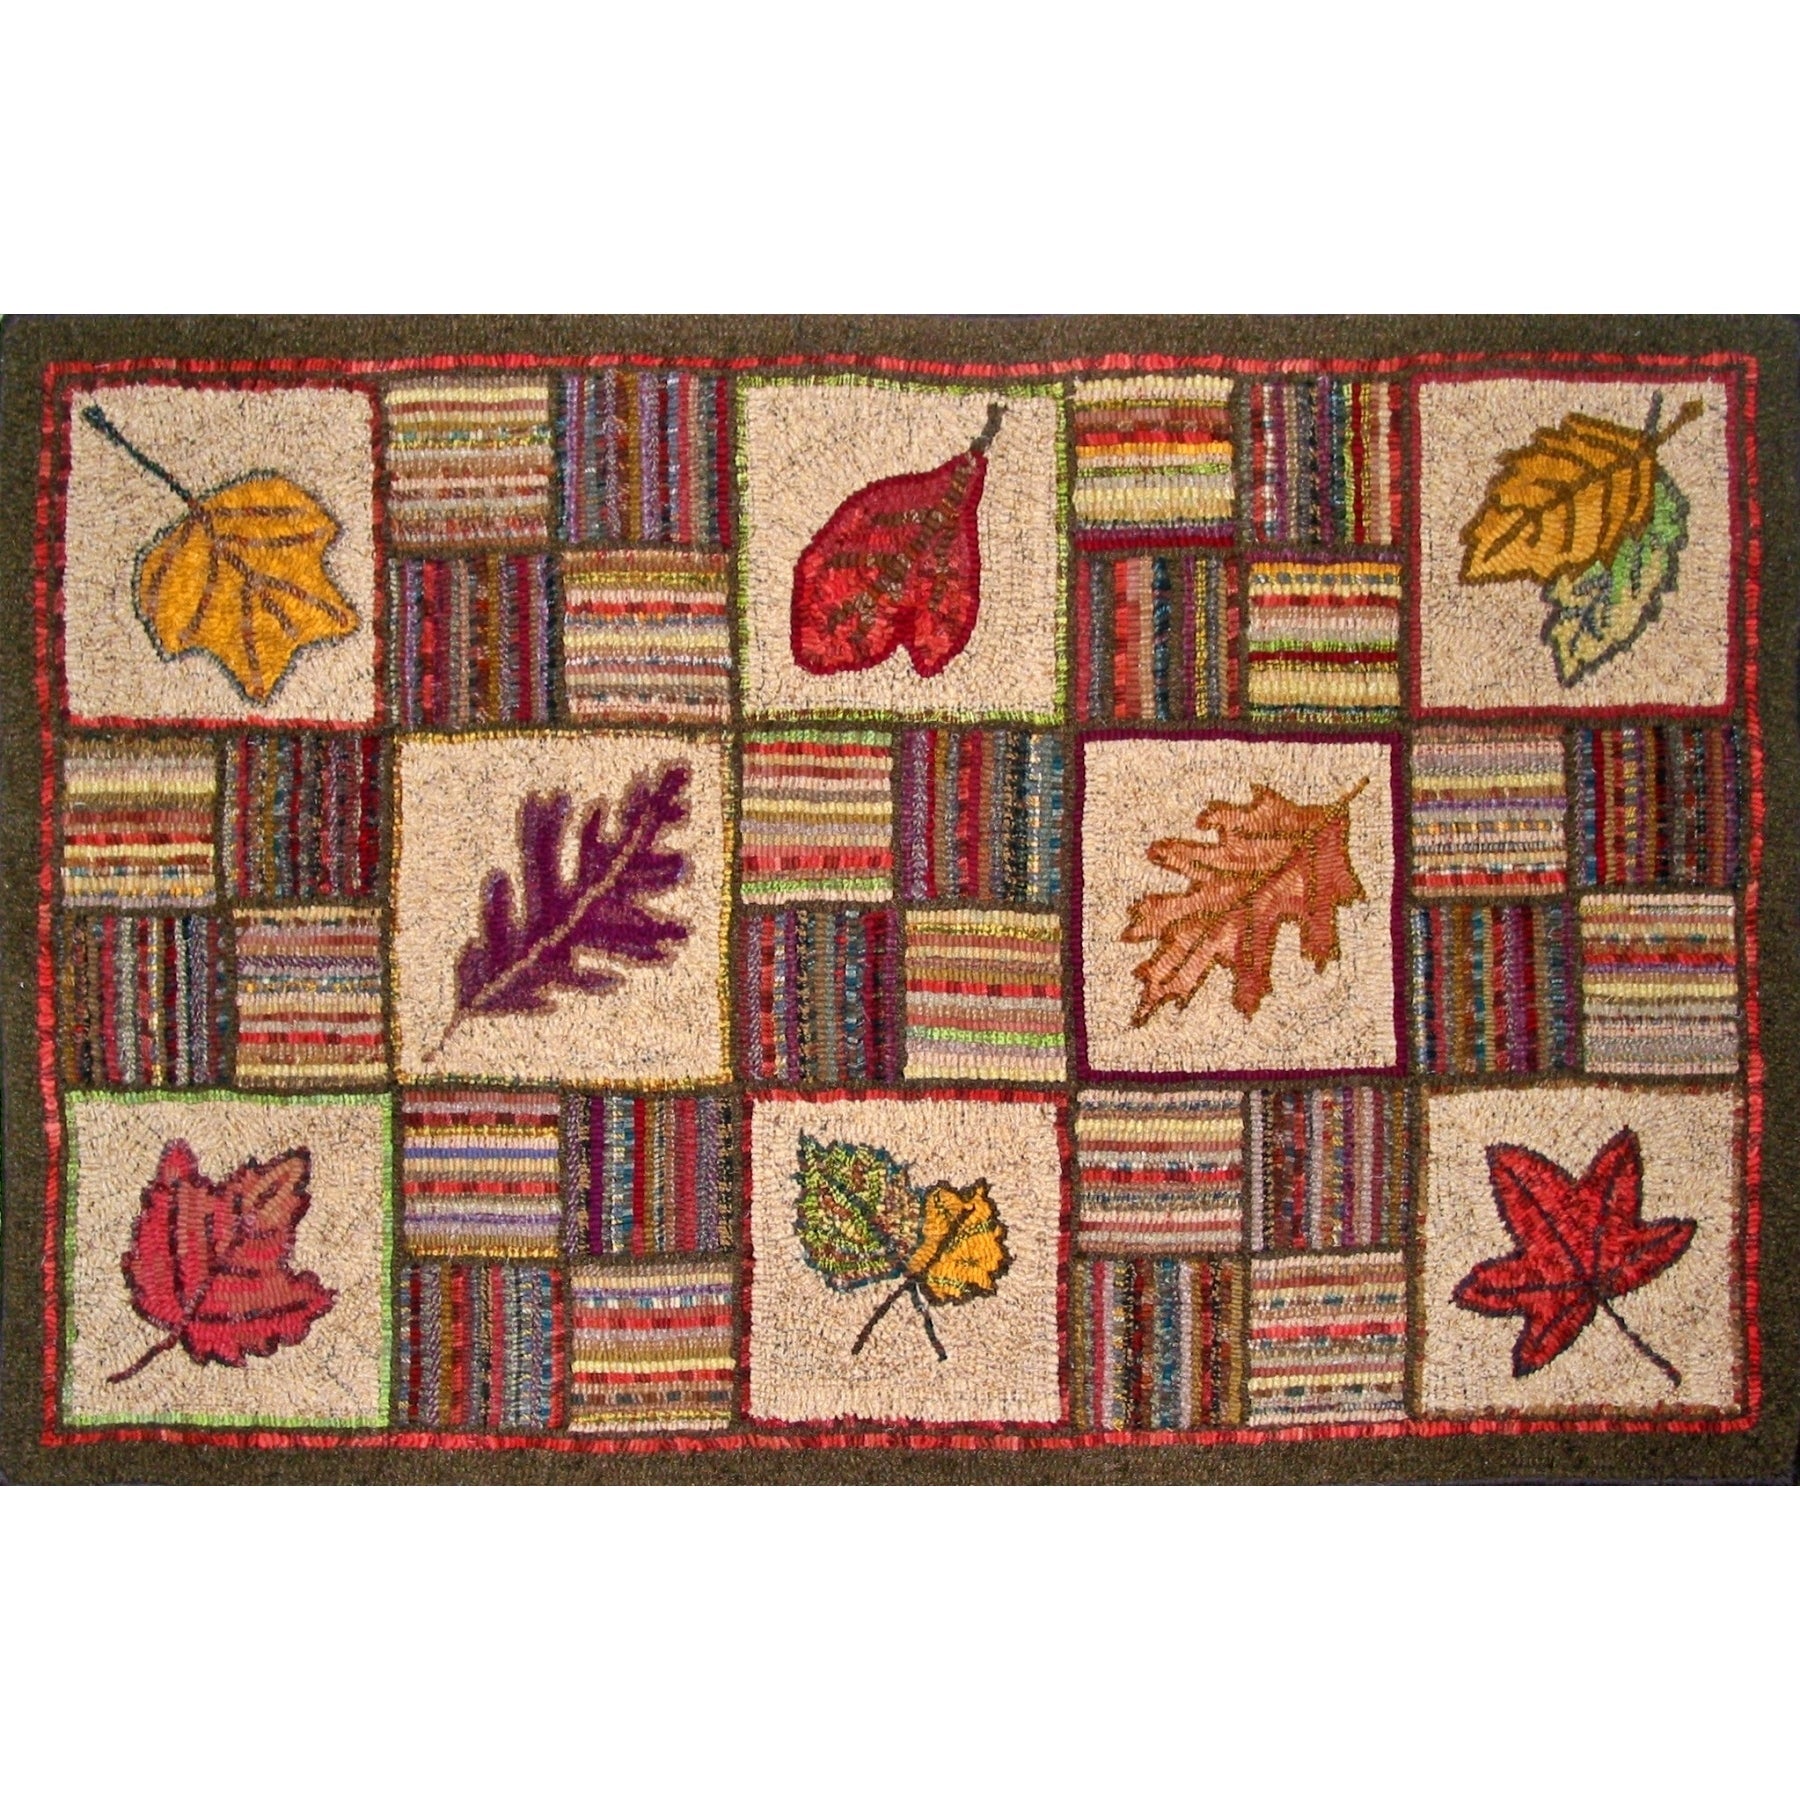 Leaf Sampler, rug hooked by Pittsburg Rughooking Guild (8 members)